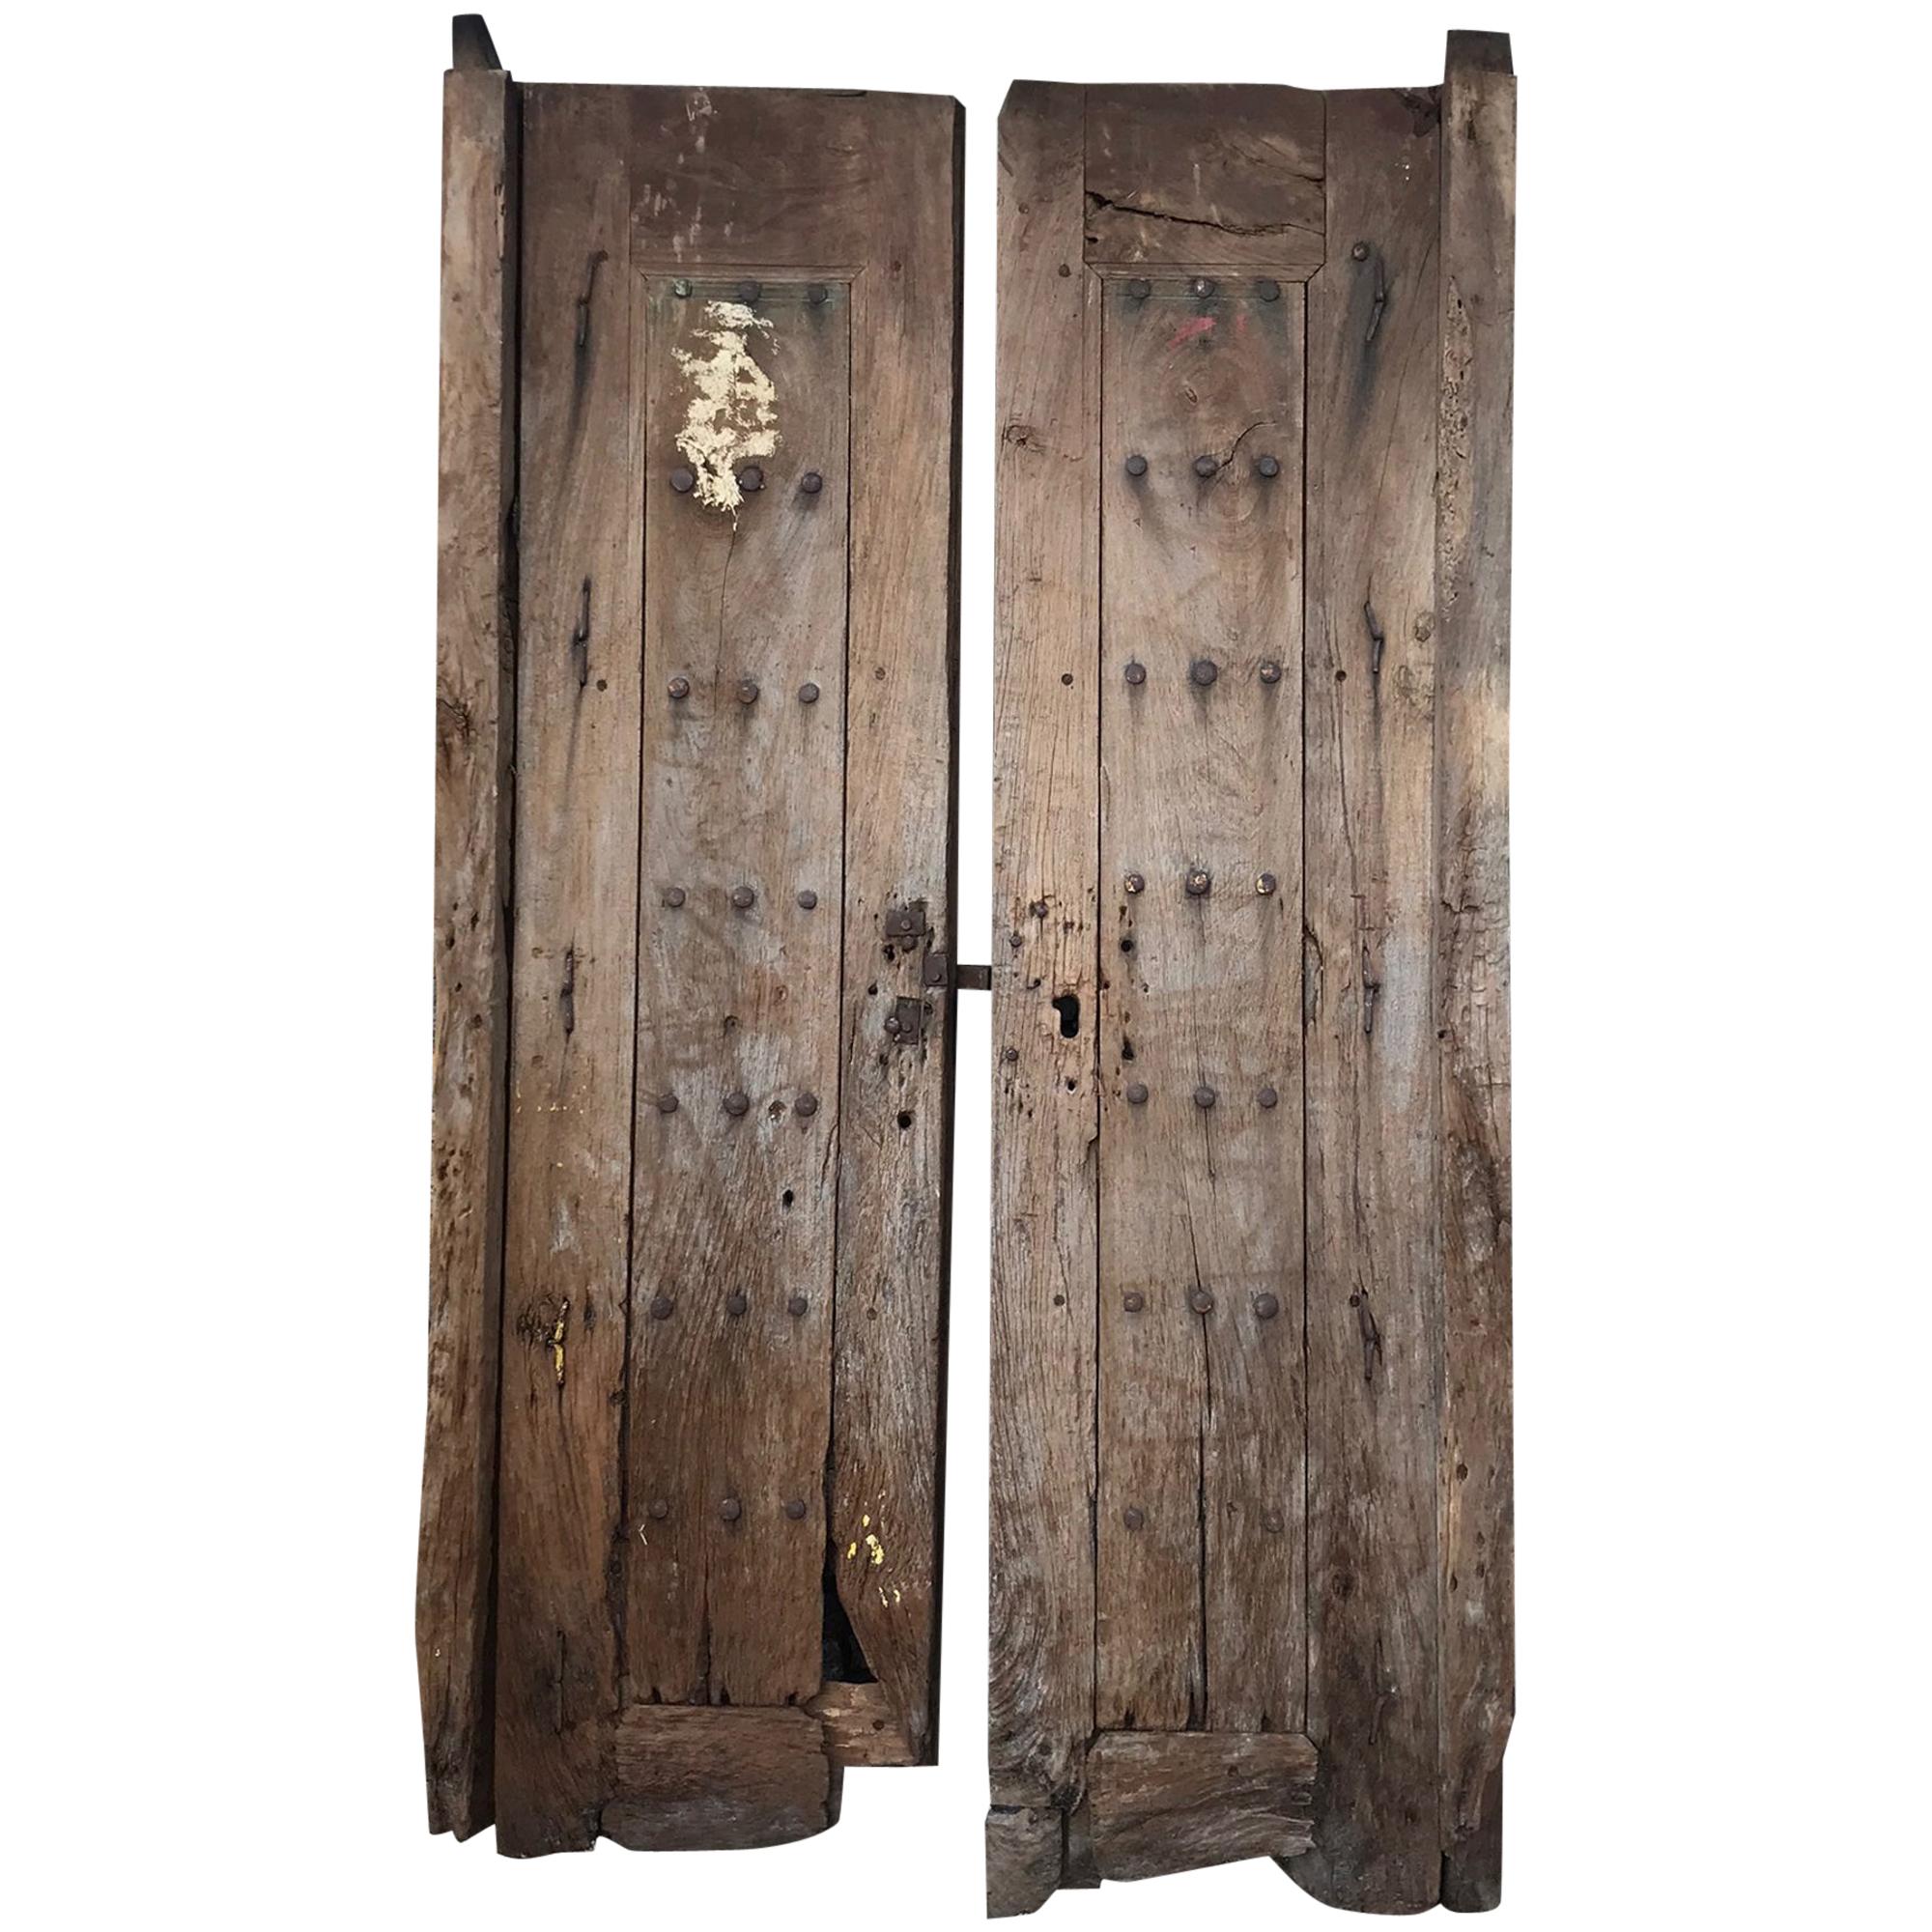 Jalisco Hacienda Handcrafted Old Rustic Door in Solid Mesquite Wood Mexico 1920s